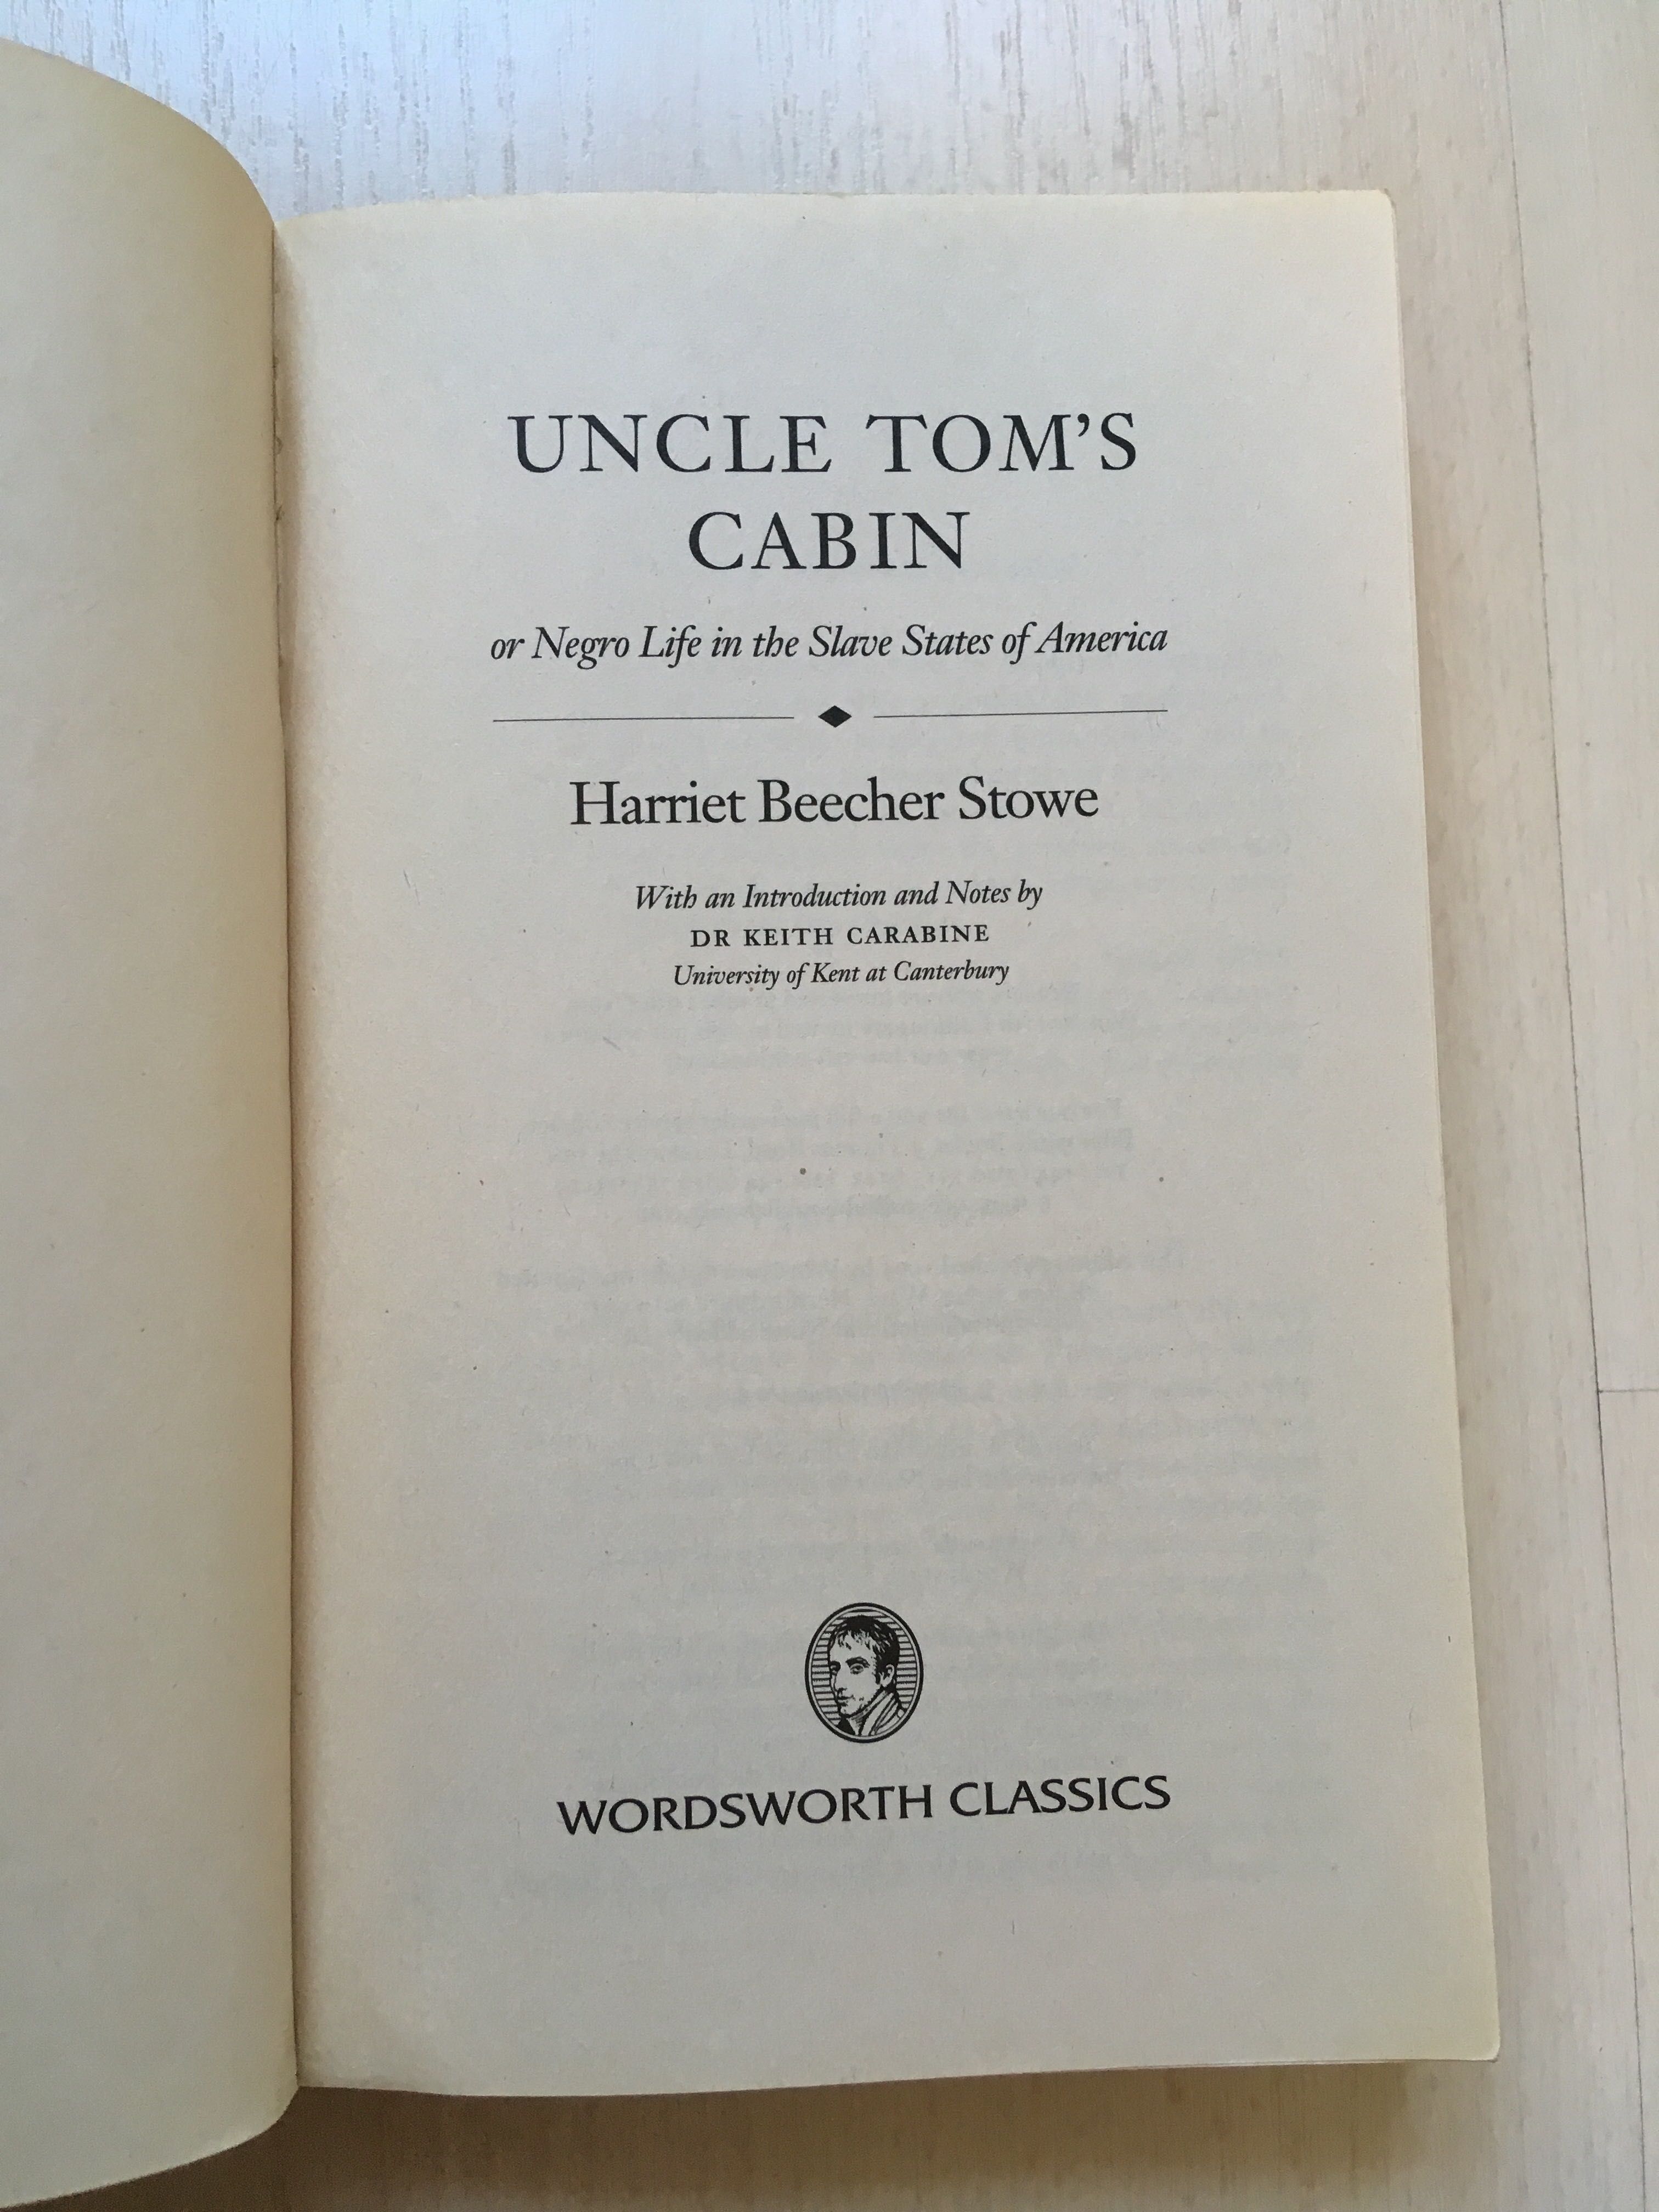 Uncle Tom’s Cabin, Harriet Beecher Stowe